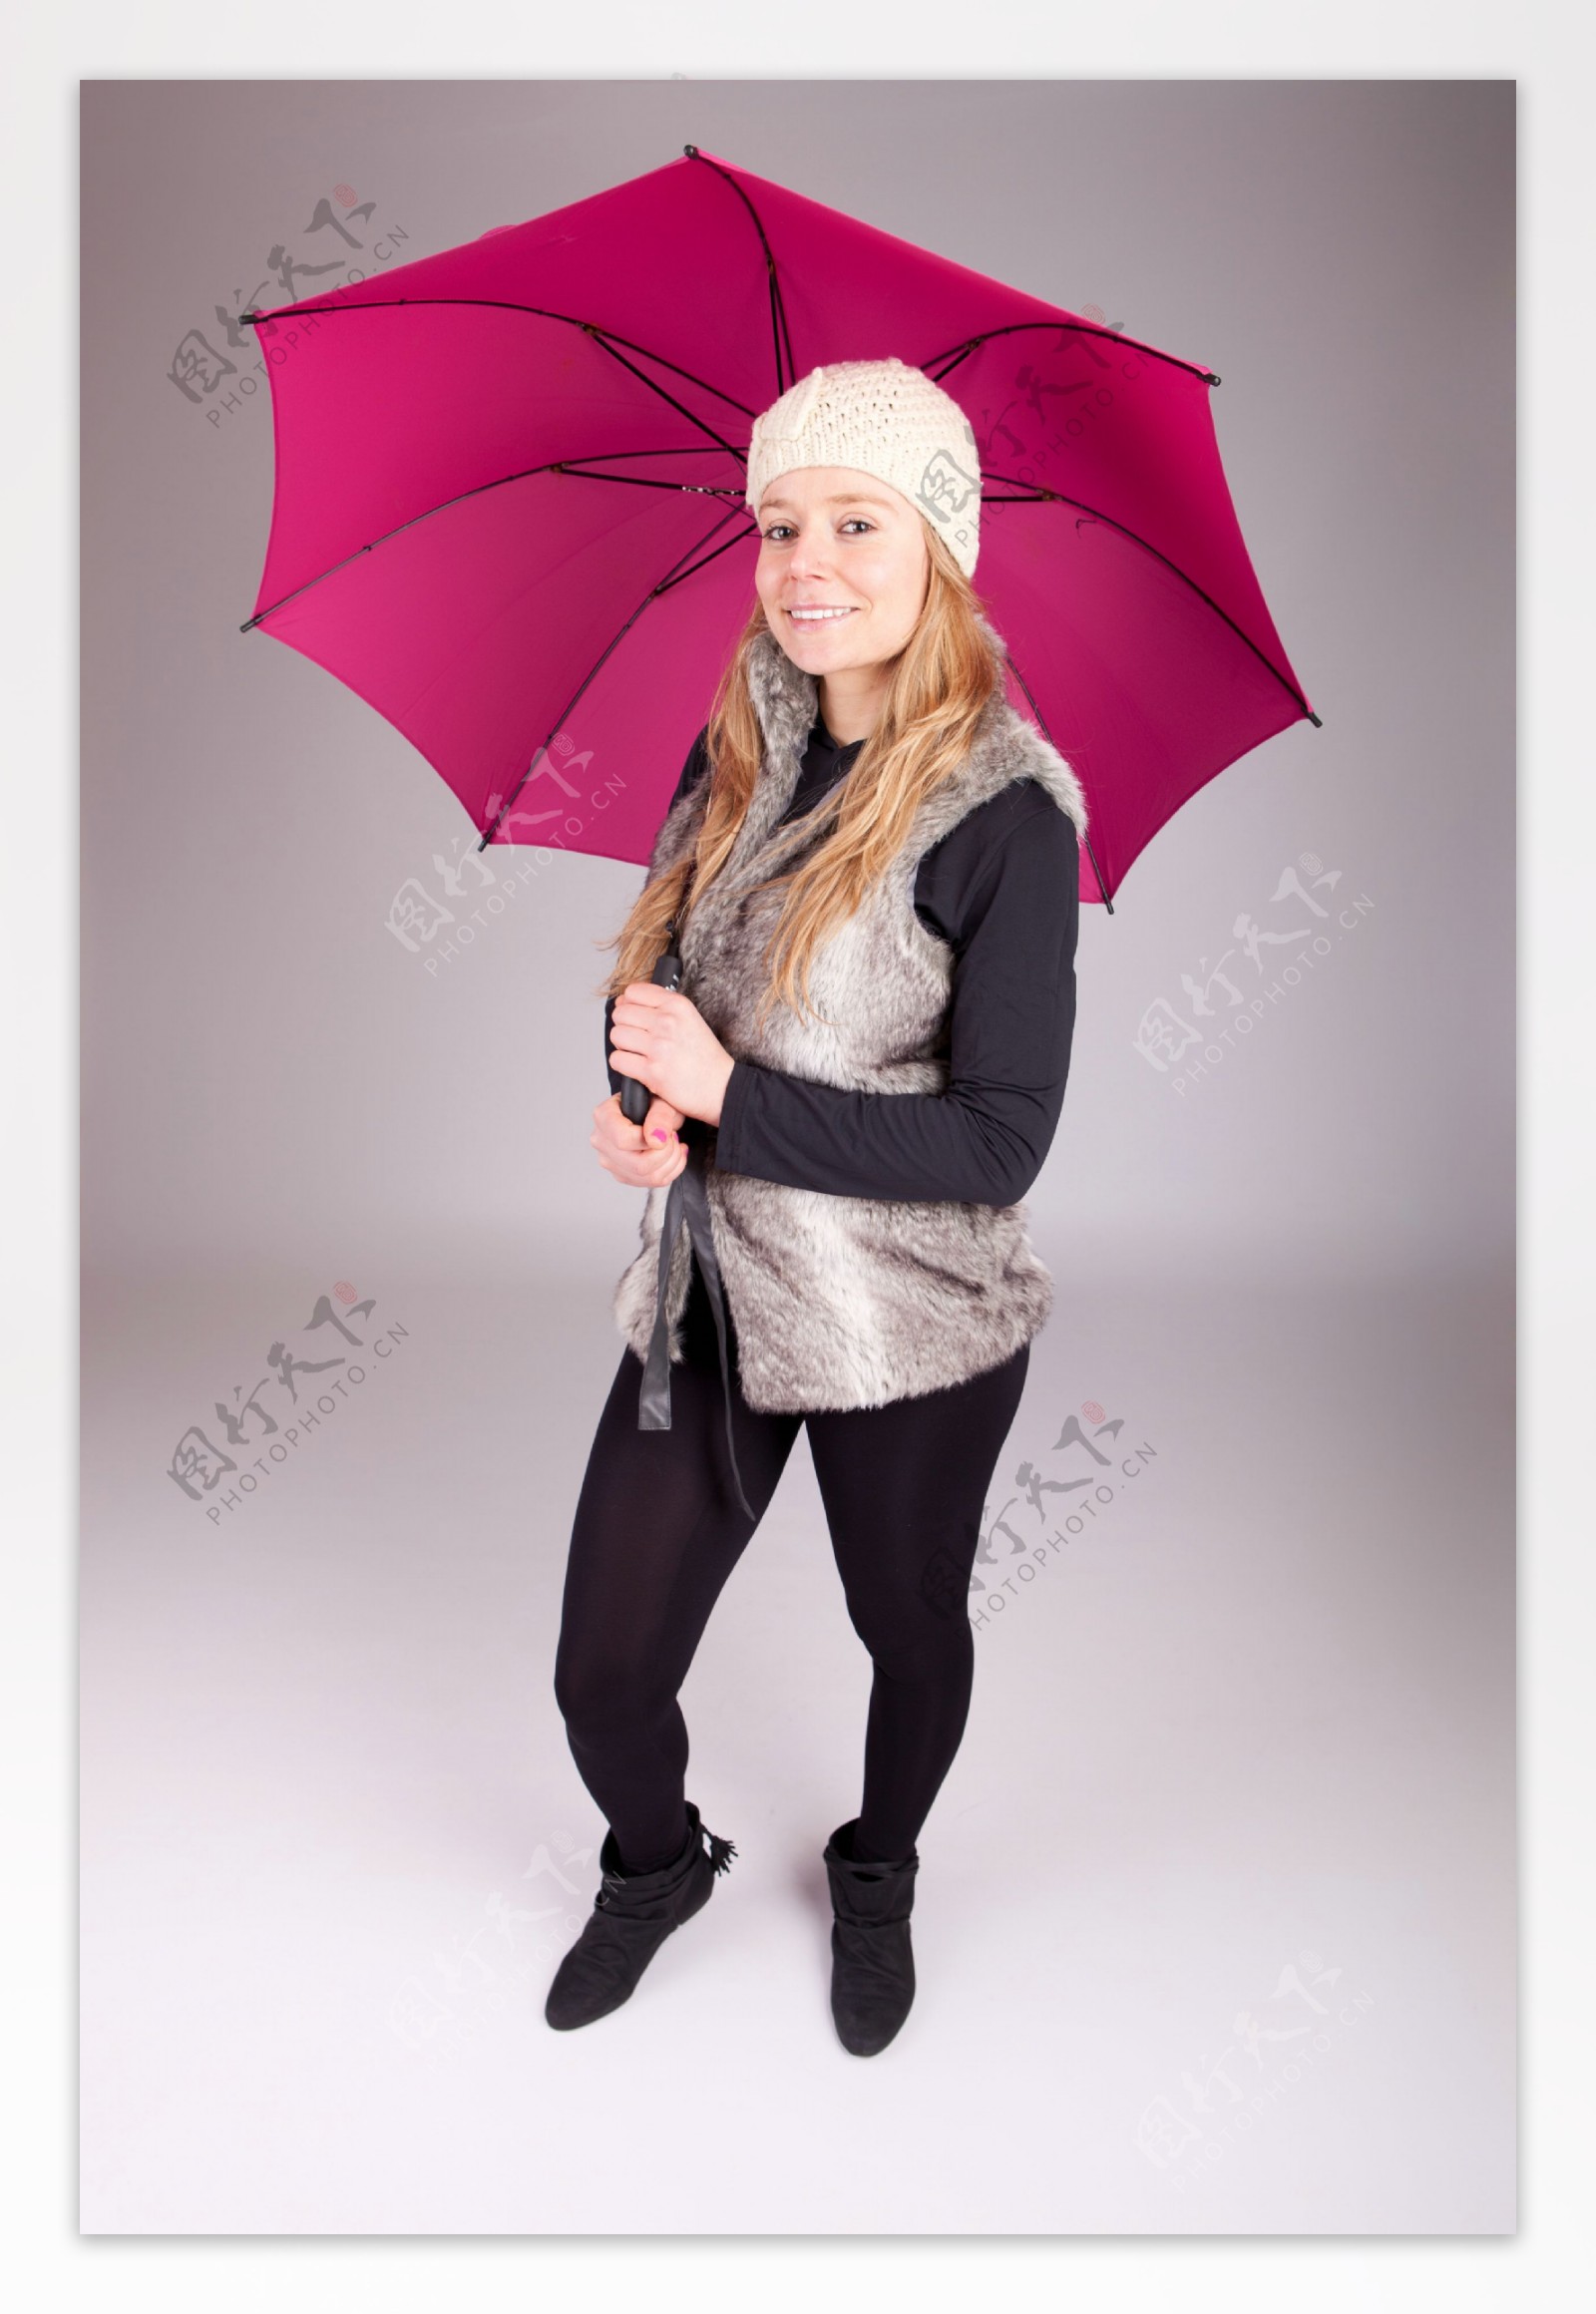 打伞的美女模特图片